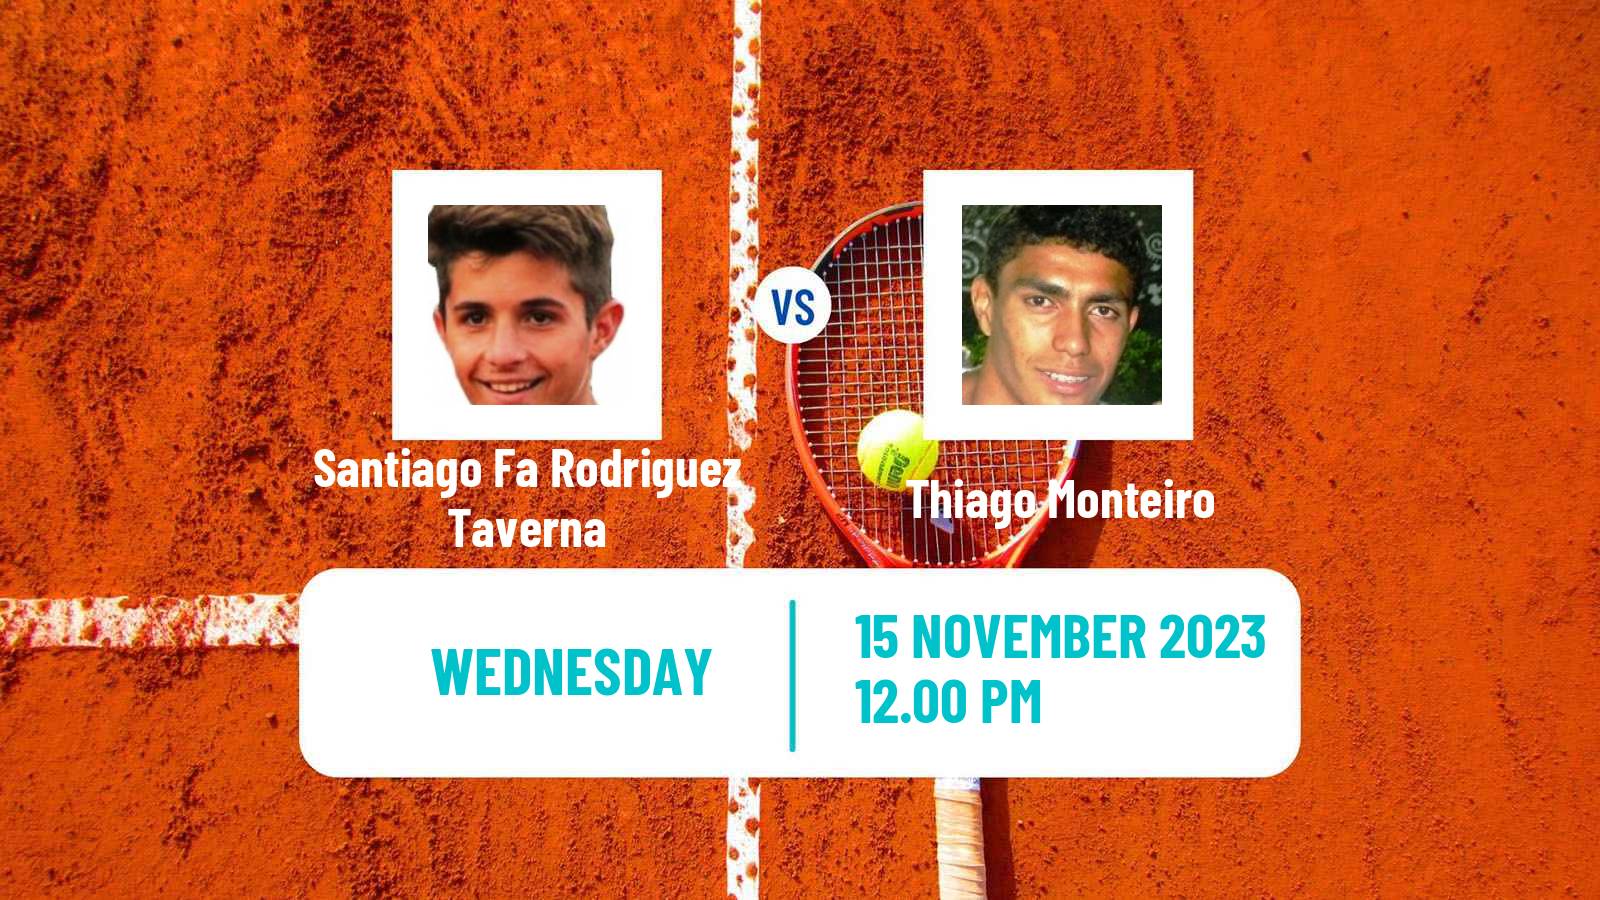 Tennis Montevideo Challenger Men Santiago Fa Rodriguez Taverna - Thiago Monteiro